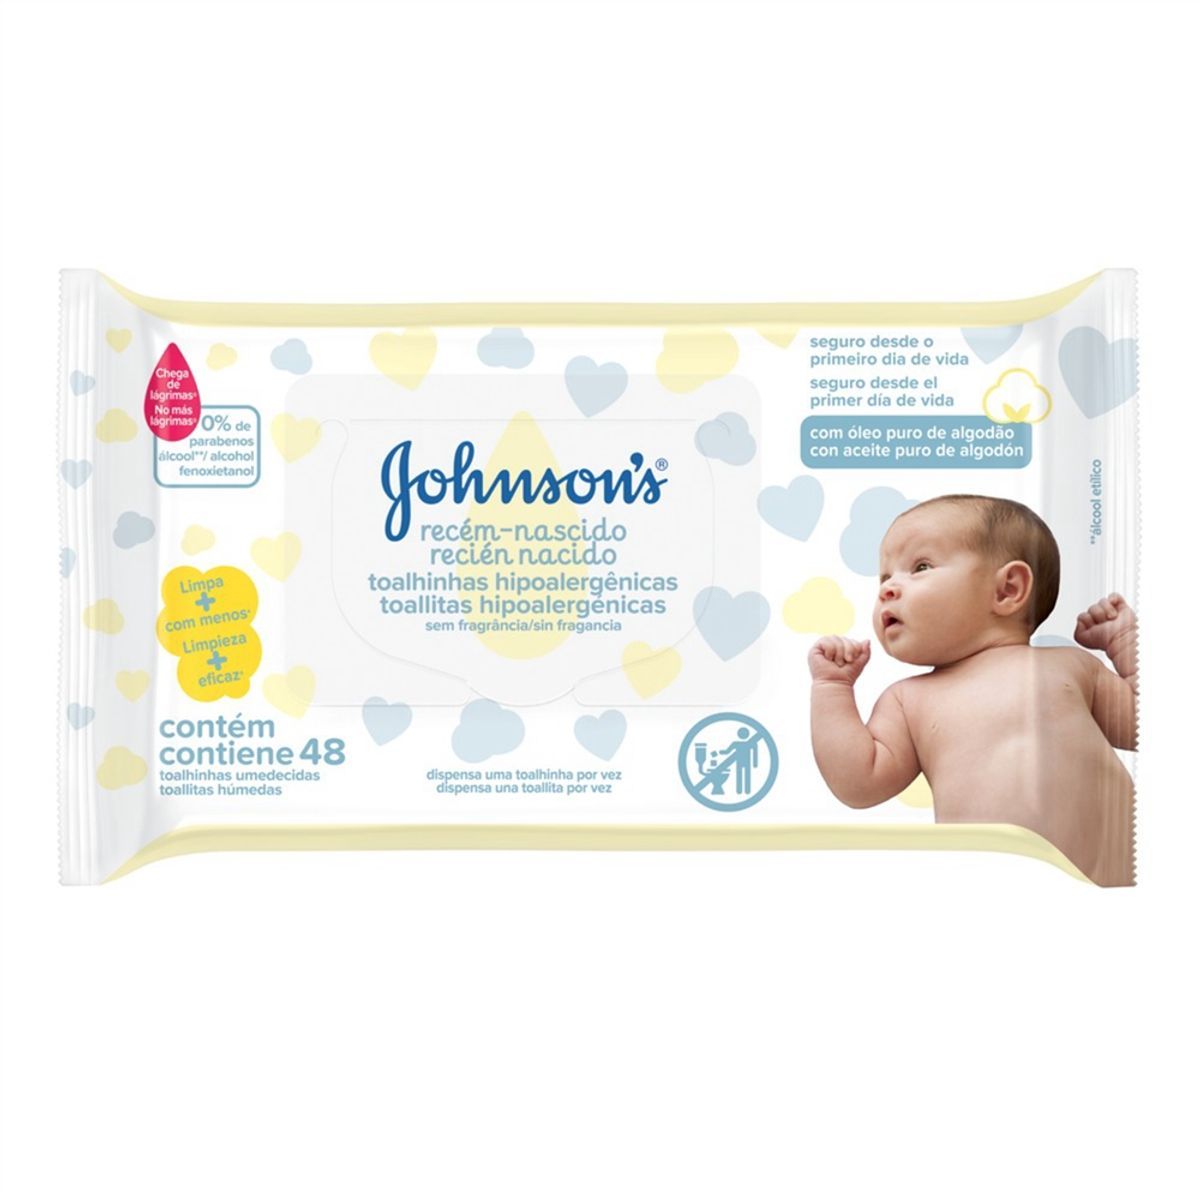 Lenços Umedecidos Johnson's Baby Recém-Nascido Sem Fragrância 48 unidades image number 0